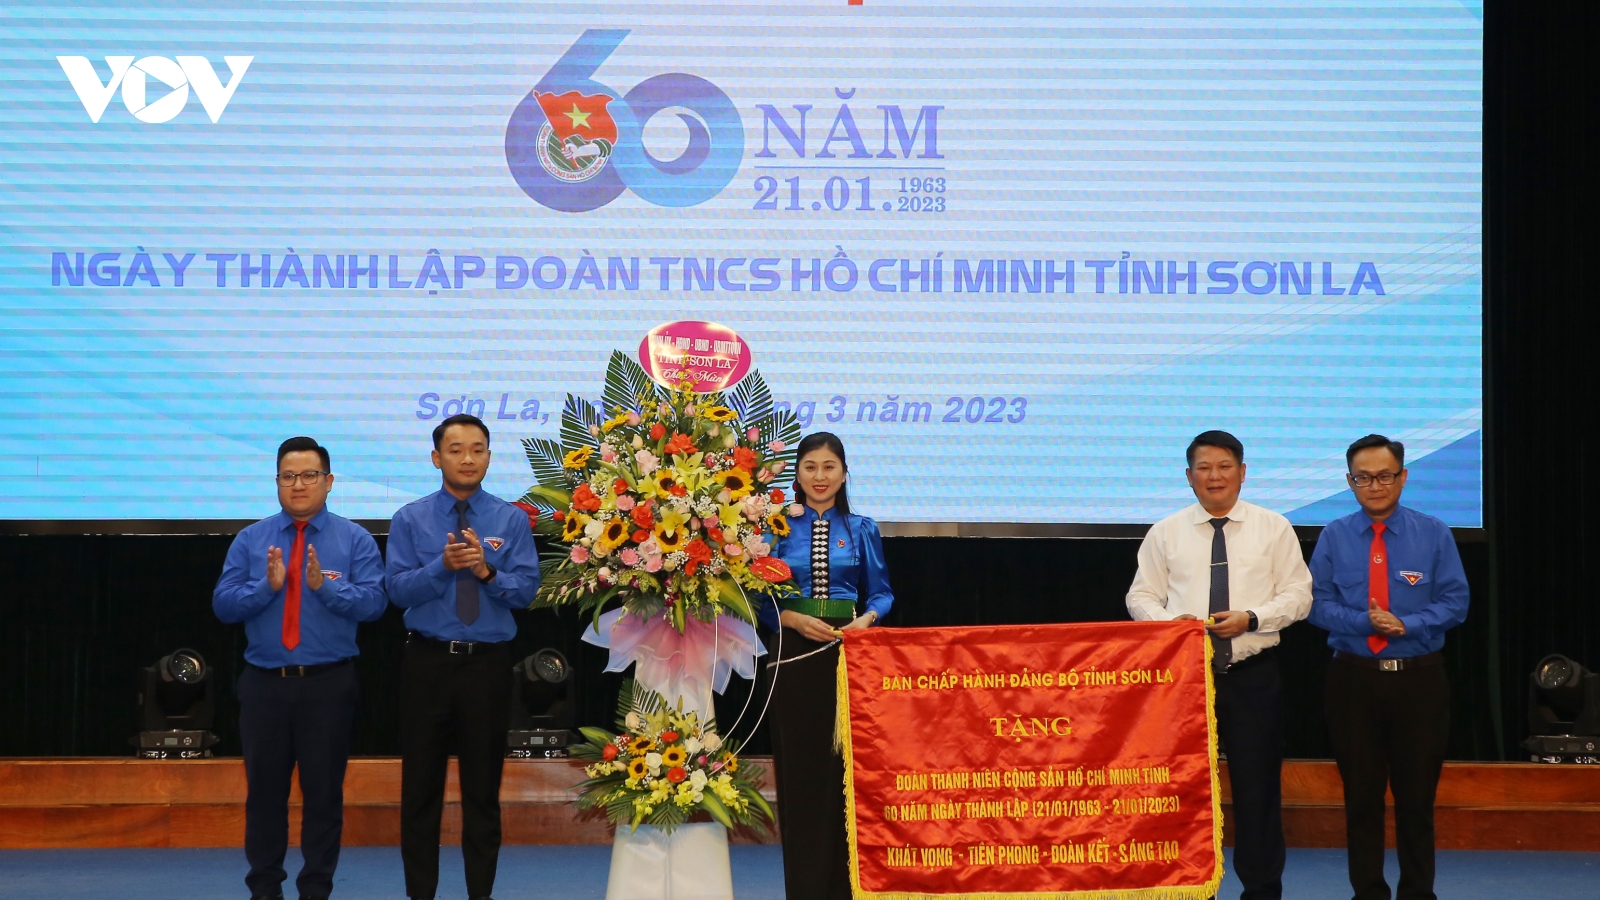 Kỷ niệm 60 năm Ngày thành lập đoàn Thanh niên cộng sản Hồ Chí Minh tỉnh Sơn La